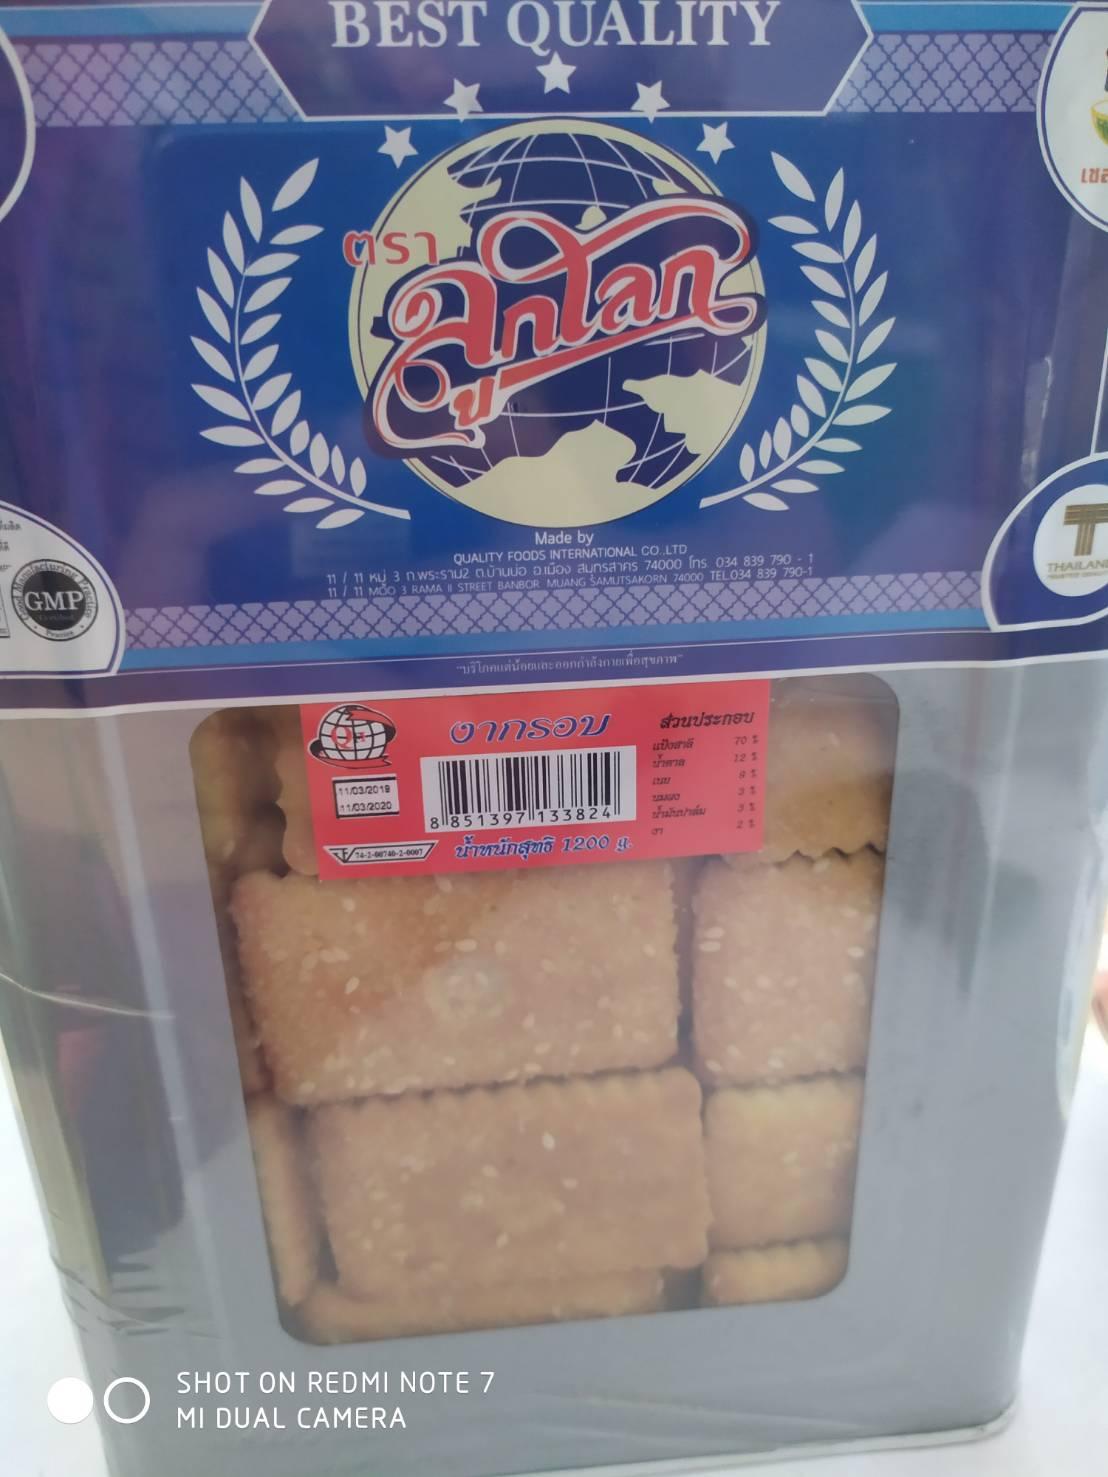 ขนมปี๊บ  ขนมปังกรอบโรยน้ำตาล โรยงา หวานมันตามไสตล์ มีกลิ่นงาชัดเจน ขนาด 1,200 กรัม #ขนมปี๊บ ขนมยอดนิยมของไทย